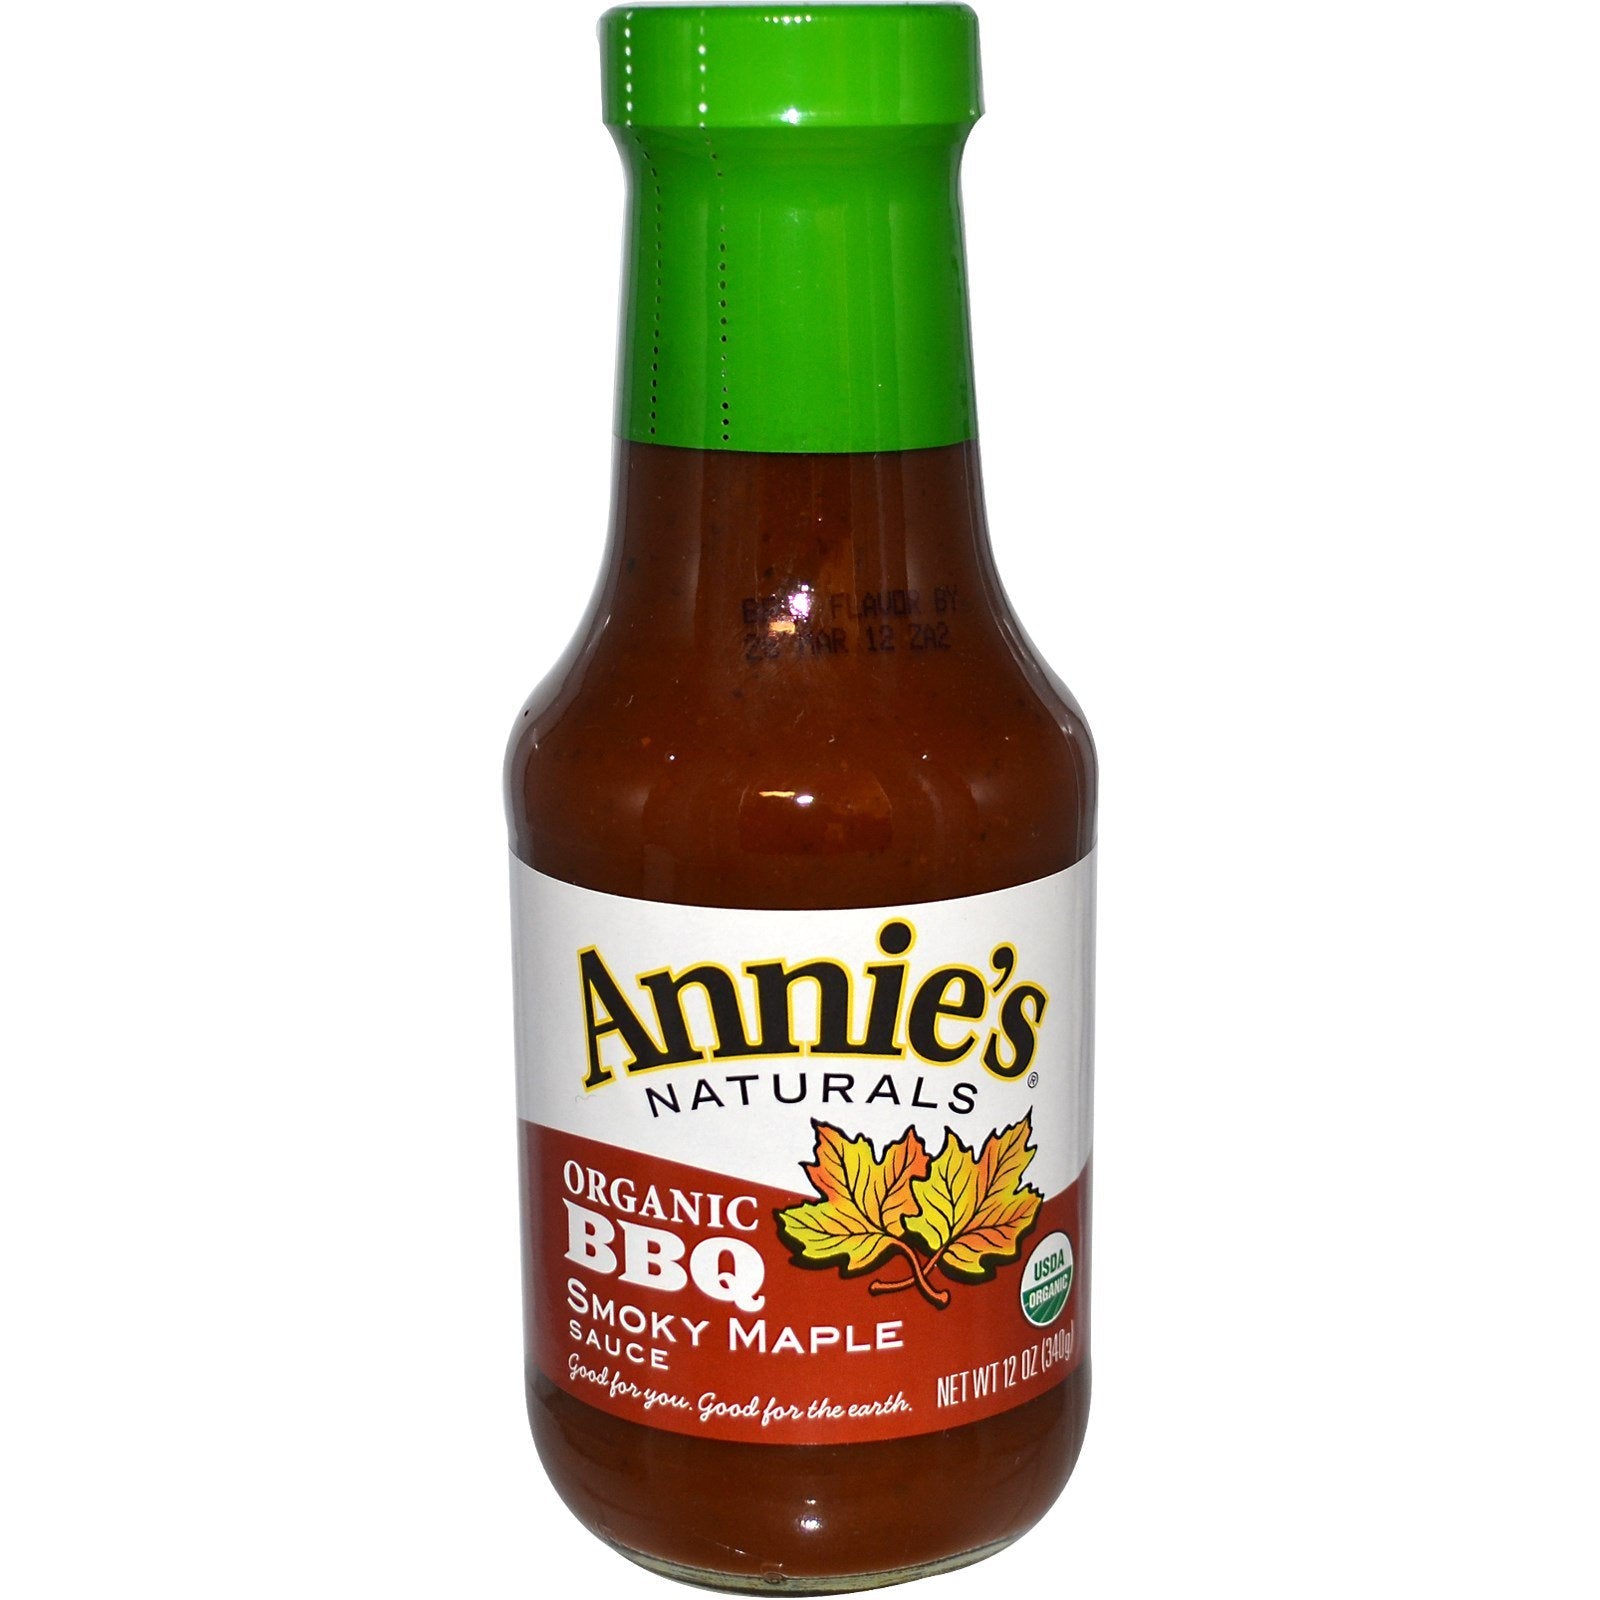 Annie's Naturals,  BBQ Smokey Maple Sauce, 12 oz (340 g)